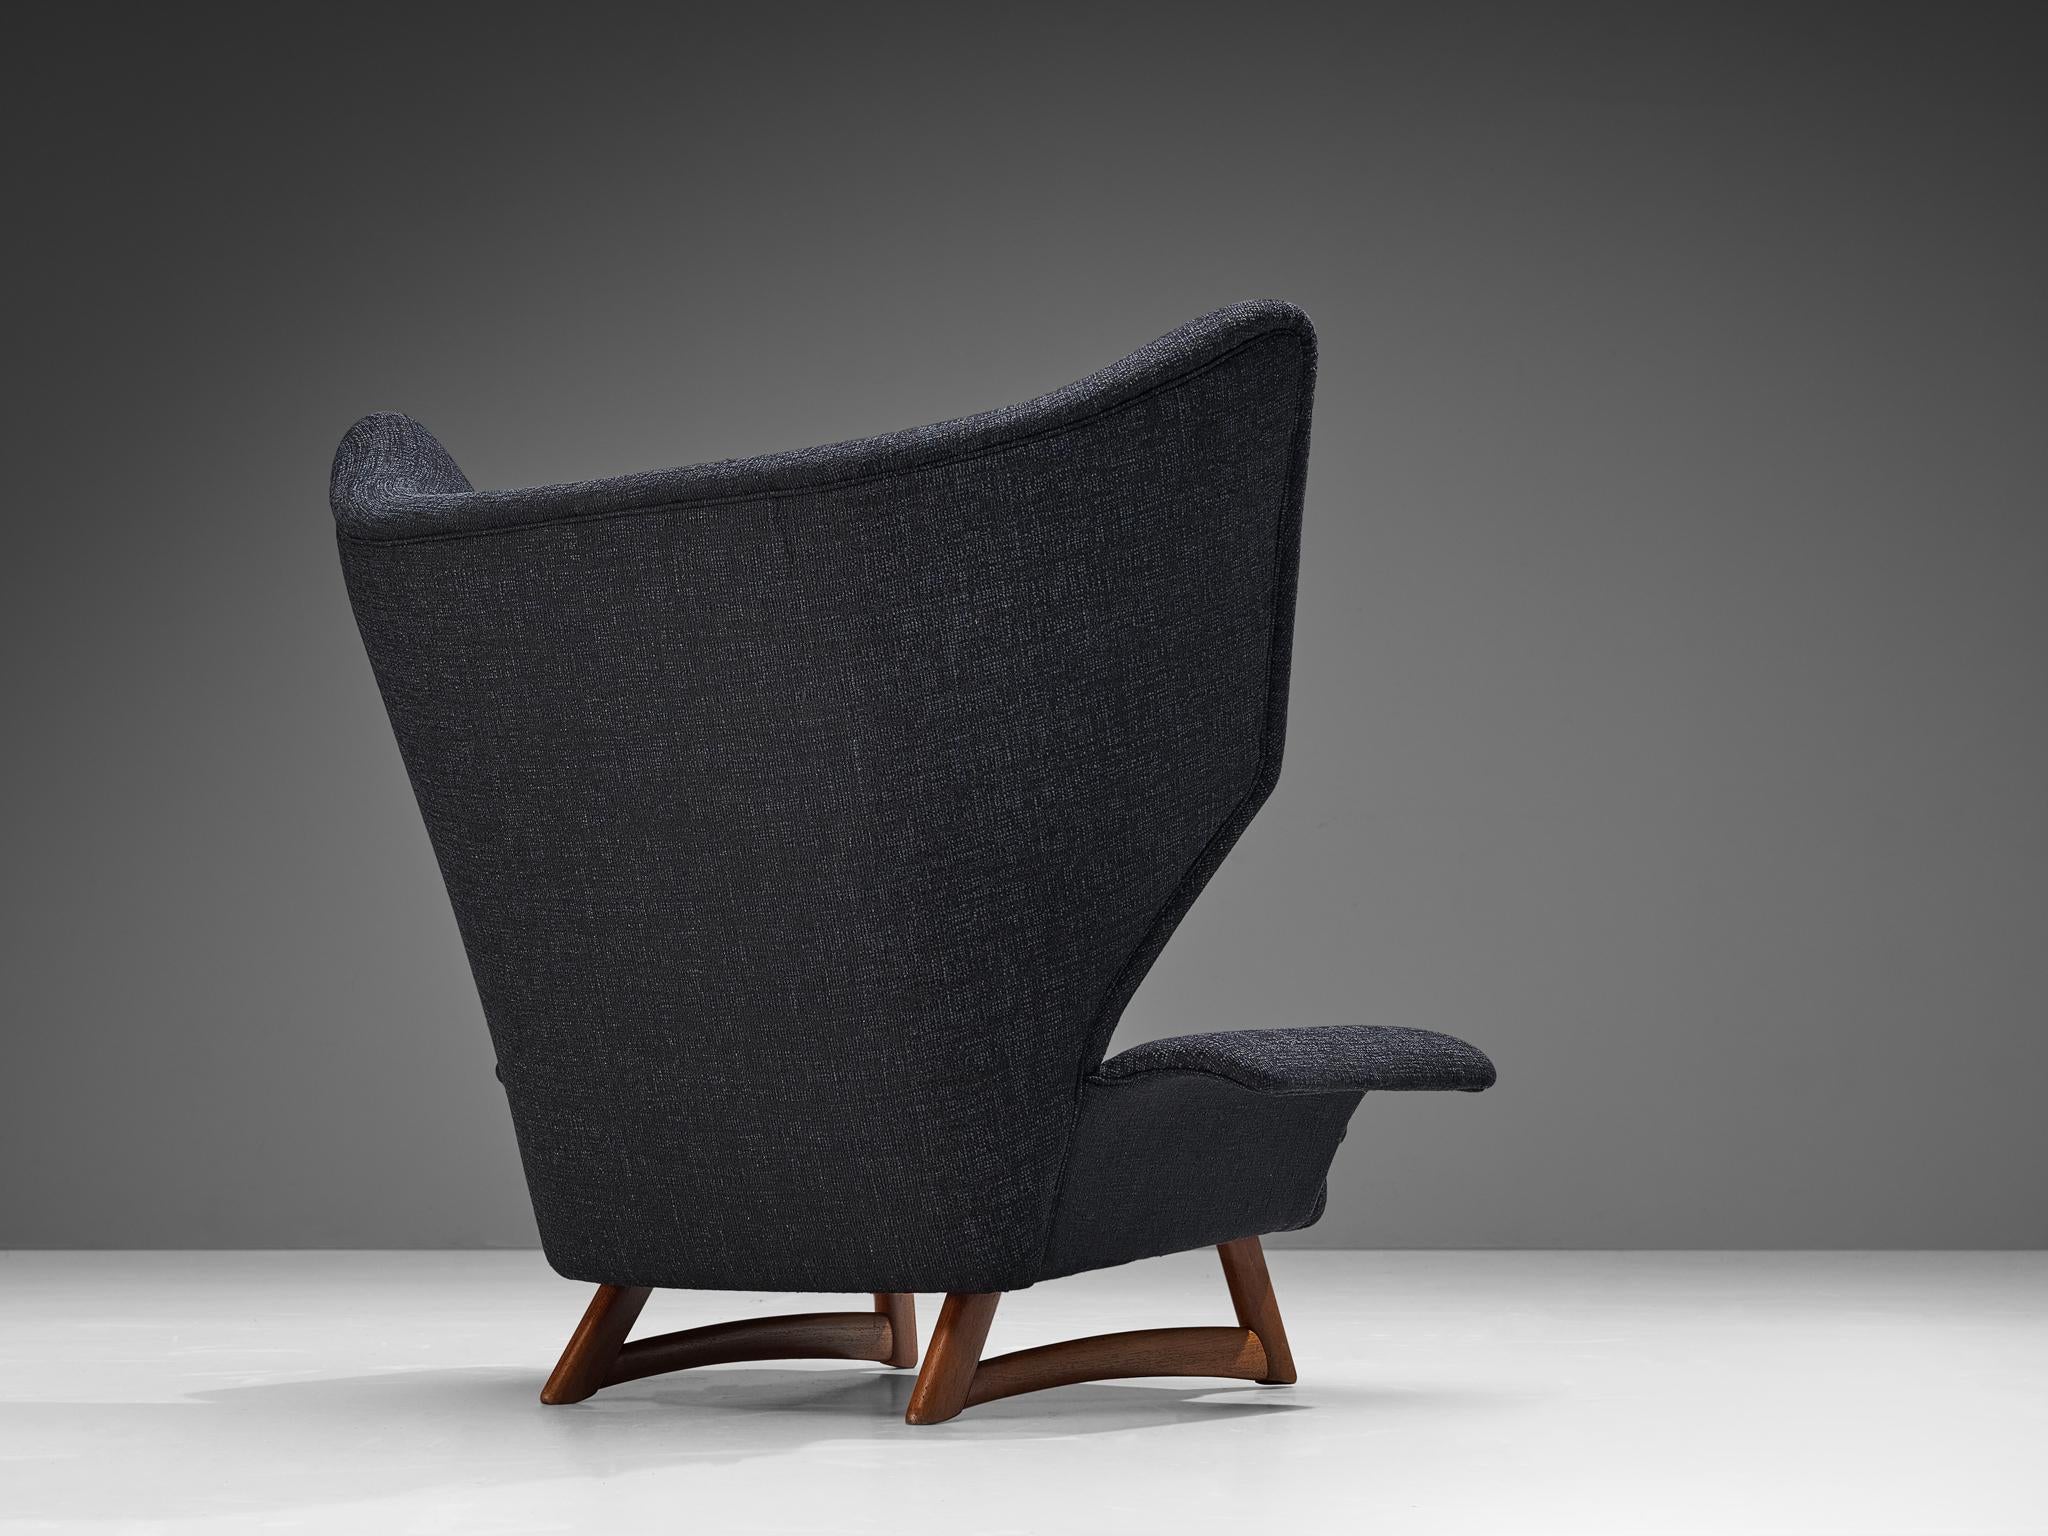 Bent Møller Jepsen 'FN' Lounge Chair in Dark Blue Upholstery